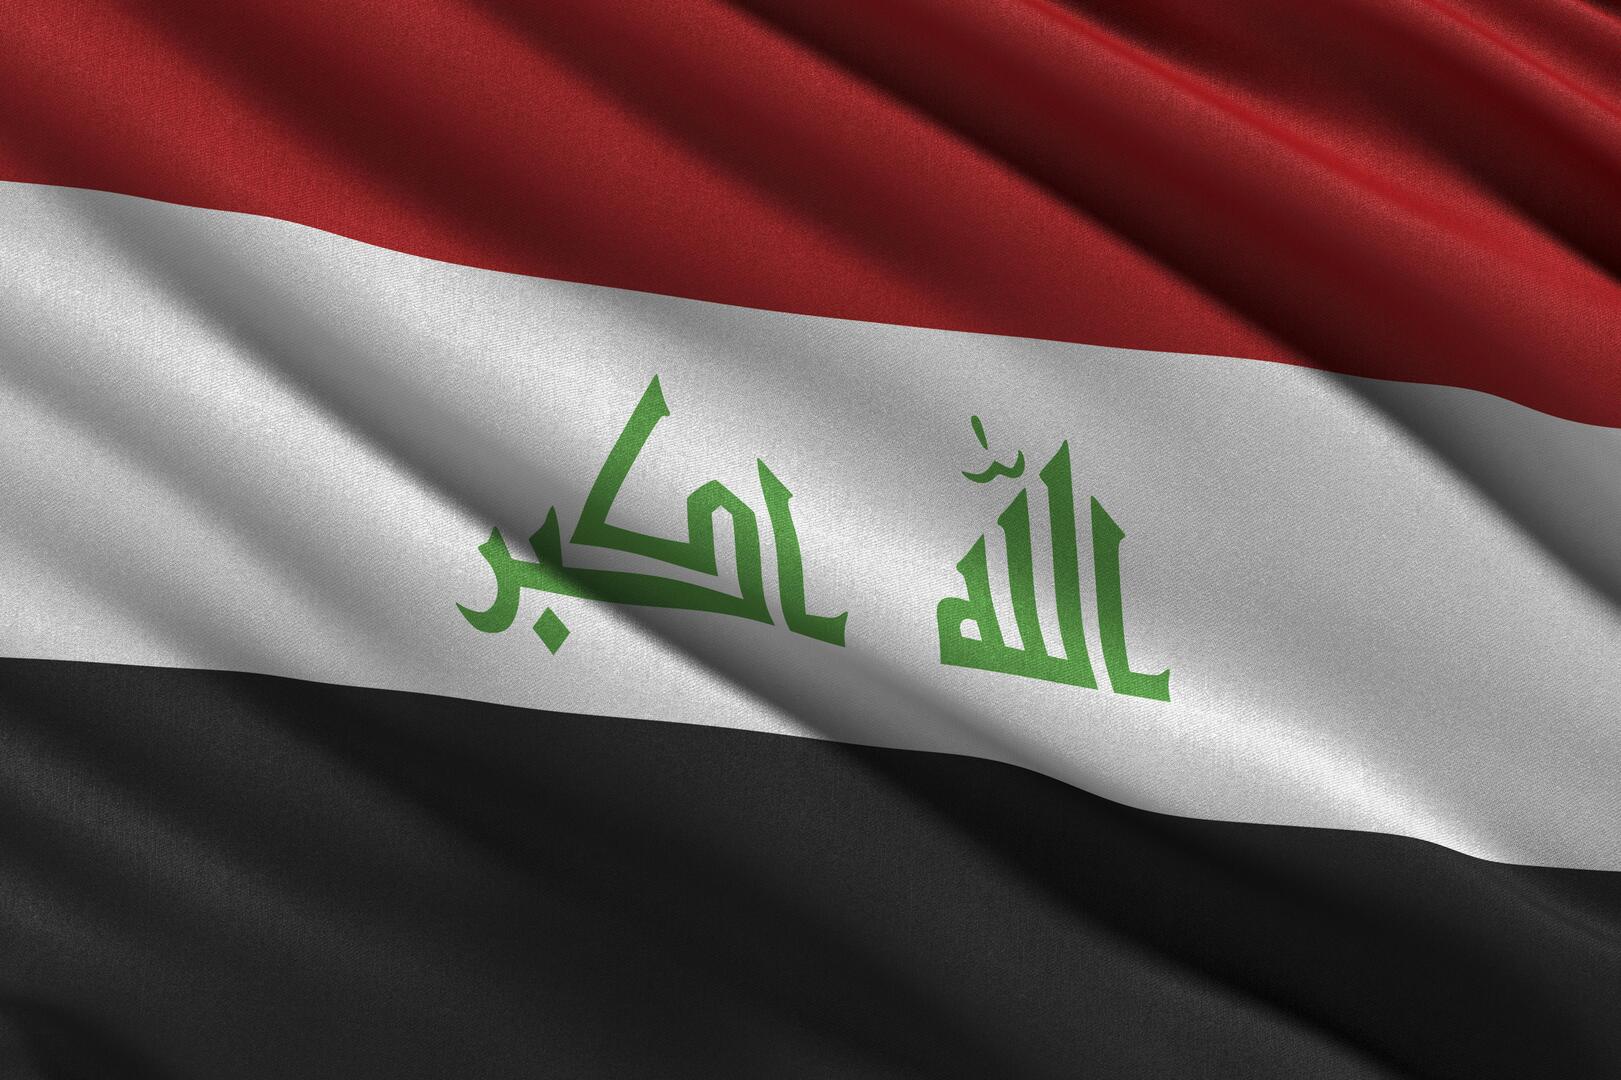 بغداد: ندعم الاتفاقات التي تحقق استقرار سوق النفط وتقلل من تراجع سعر البرميل